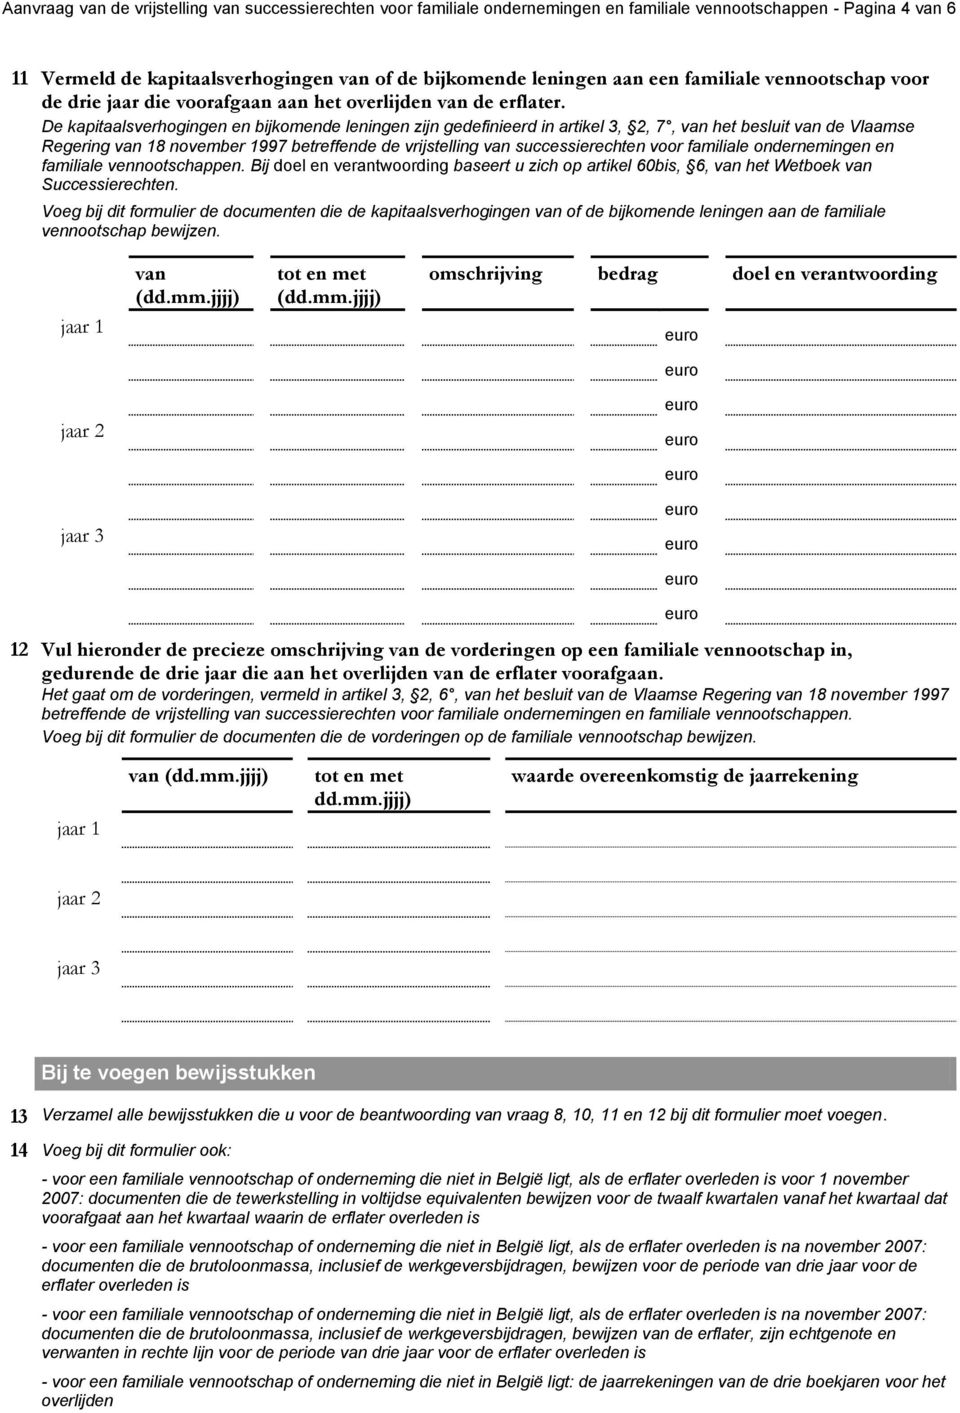 De kapitaalsverhogingen en bijkomende leningen zijn gedefinieerd in artikel 3, 2, 7, van het besluit van de Vlaamse Regering van 18 november 1997 betreffende de vrijstelling van successierechten voor